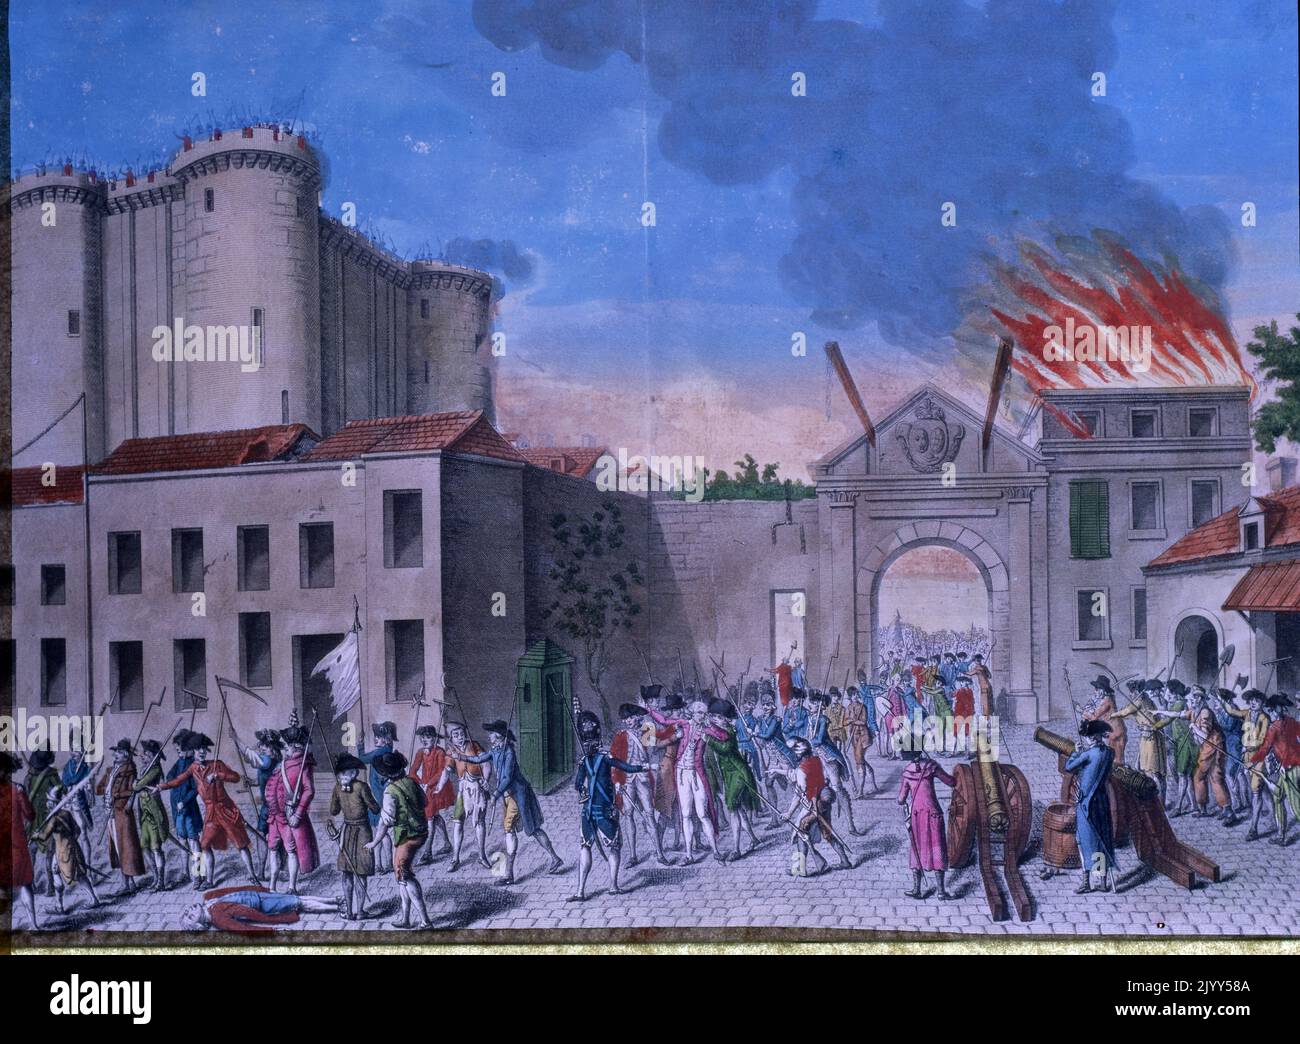 La Pry de la Bastille-Gemälde, das die Gefangennahme der Garnison zeigt, die das Bastille-Gefängnis während der Französischen Revolution im Jahr 1789 verwahrte. Am Morgen des 14. Juli versammelte sich eine große revolutionäre Menge vor dem königlichen Gefängnis namens Bastille, und am Nachmittag brachen Kämpfe zwischen der Menge und der königlichen Garnison aus. Stockfoto